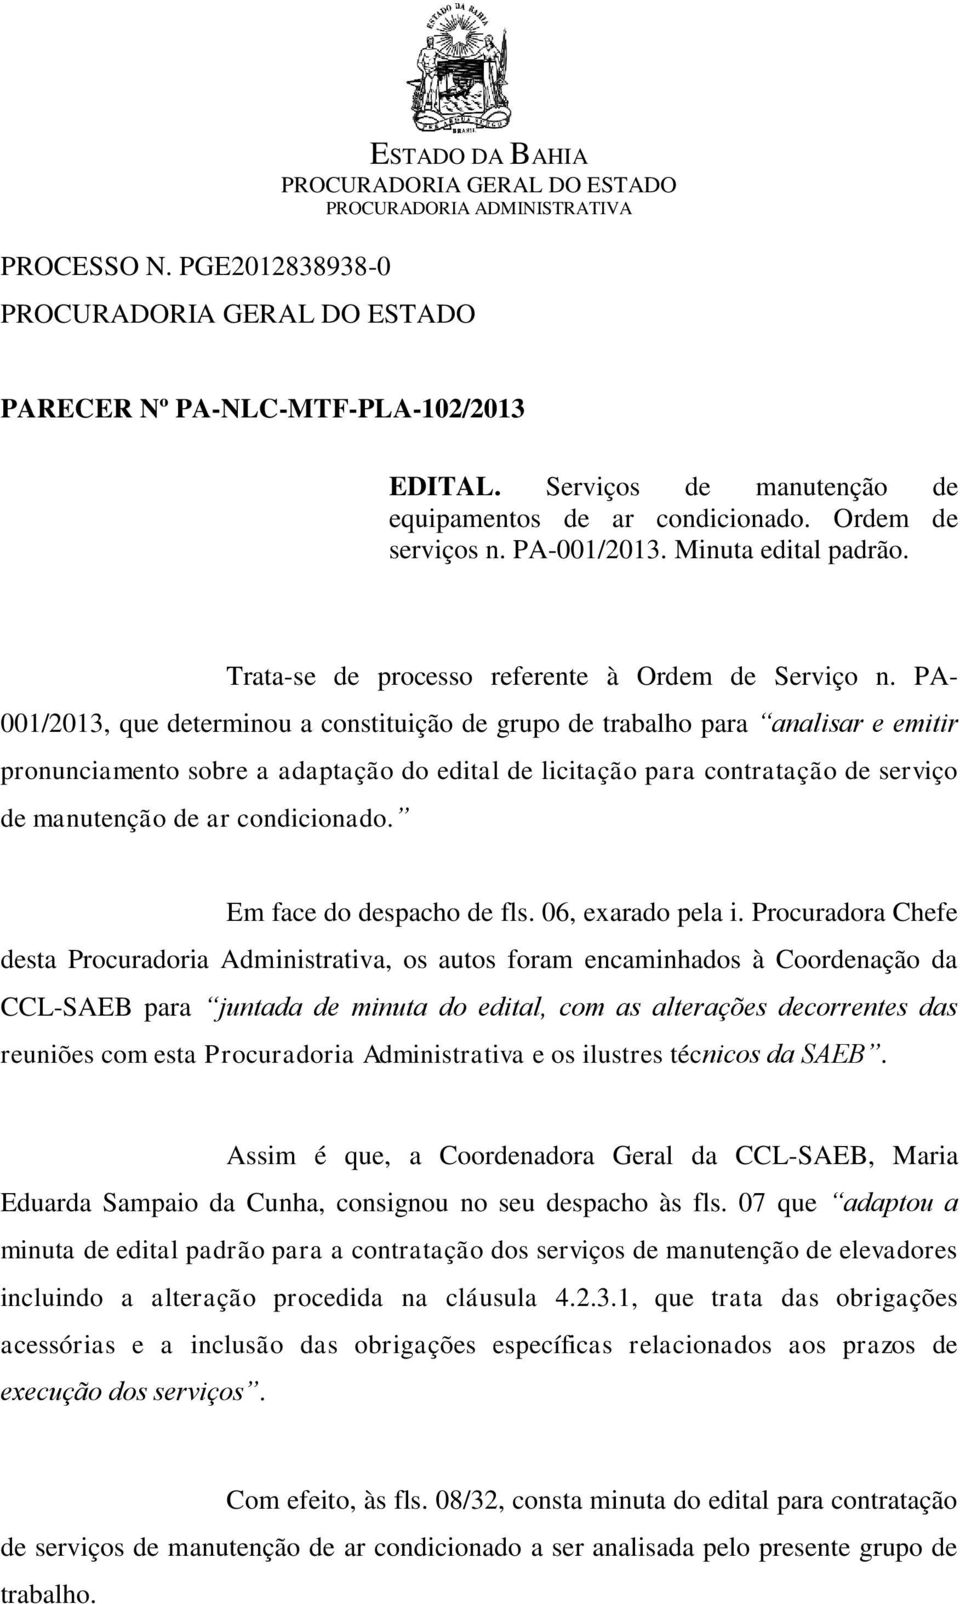 PA- 001/2013, que determinou a constituição de grupo de trabalho para analisar e emitir pronunciamento sobre a adaptação do edital de licitação para contratação de serviço de manutenção de ar